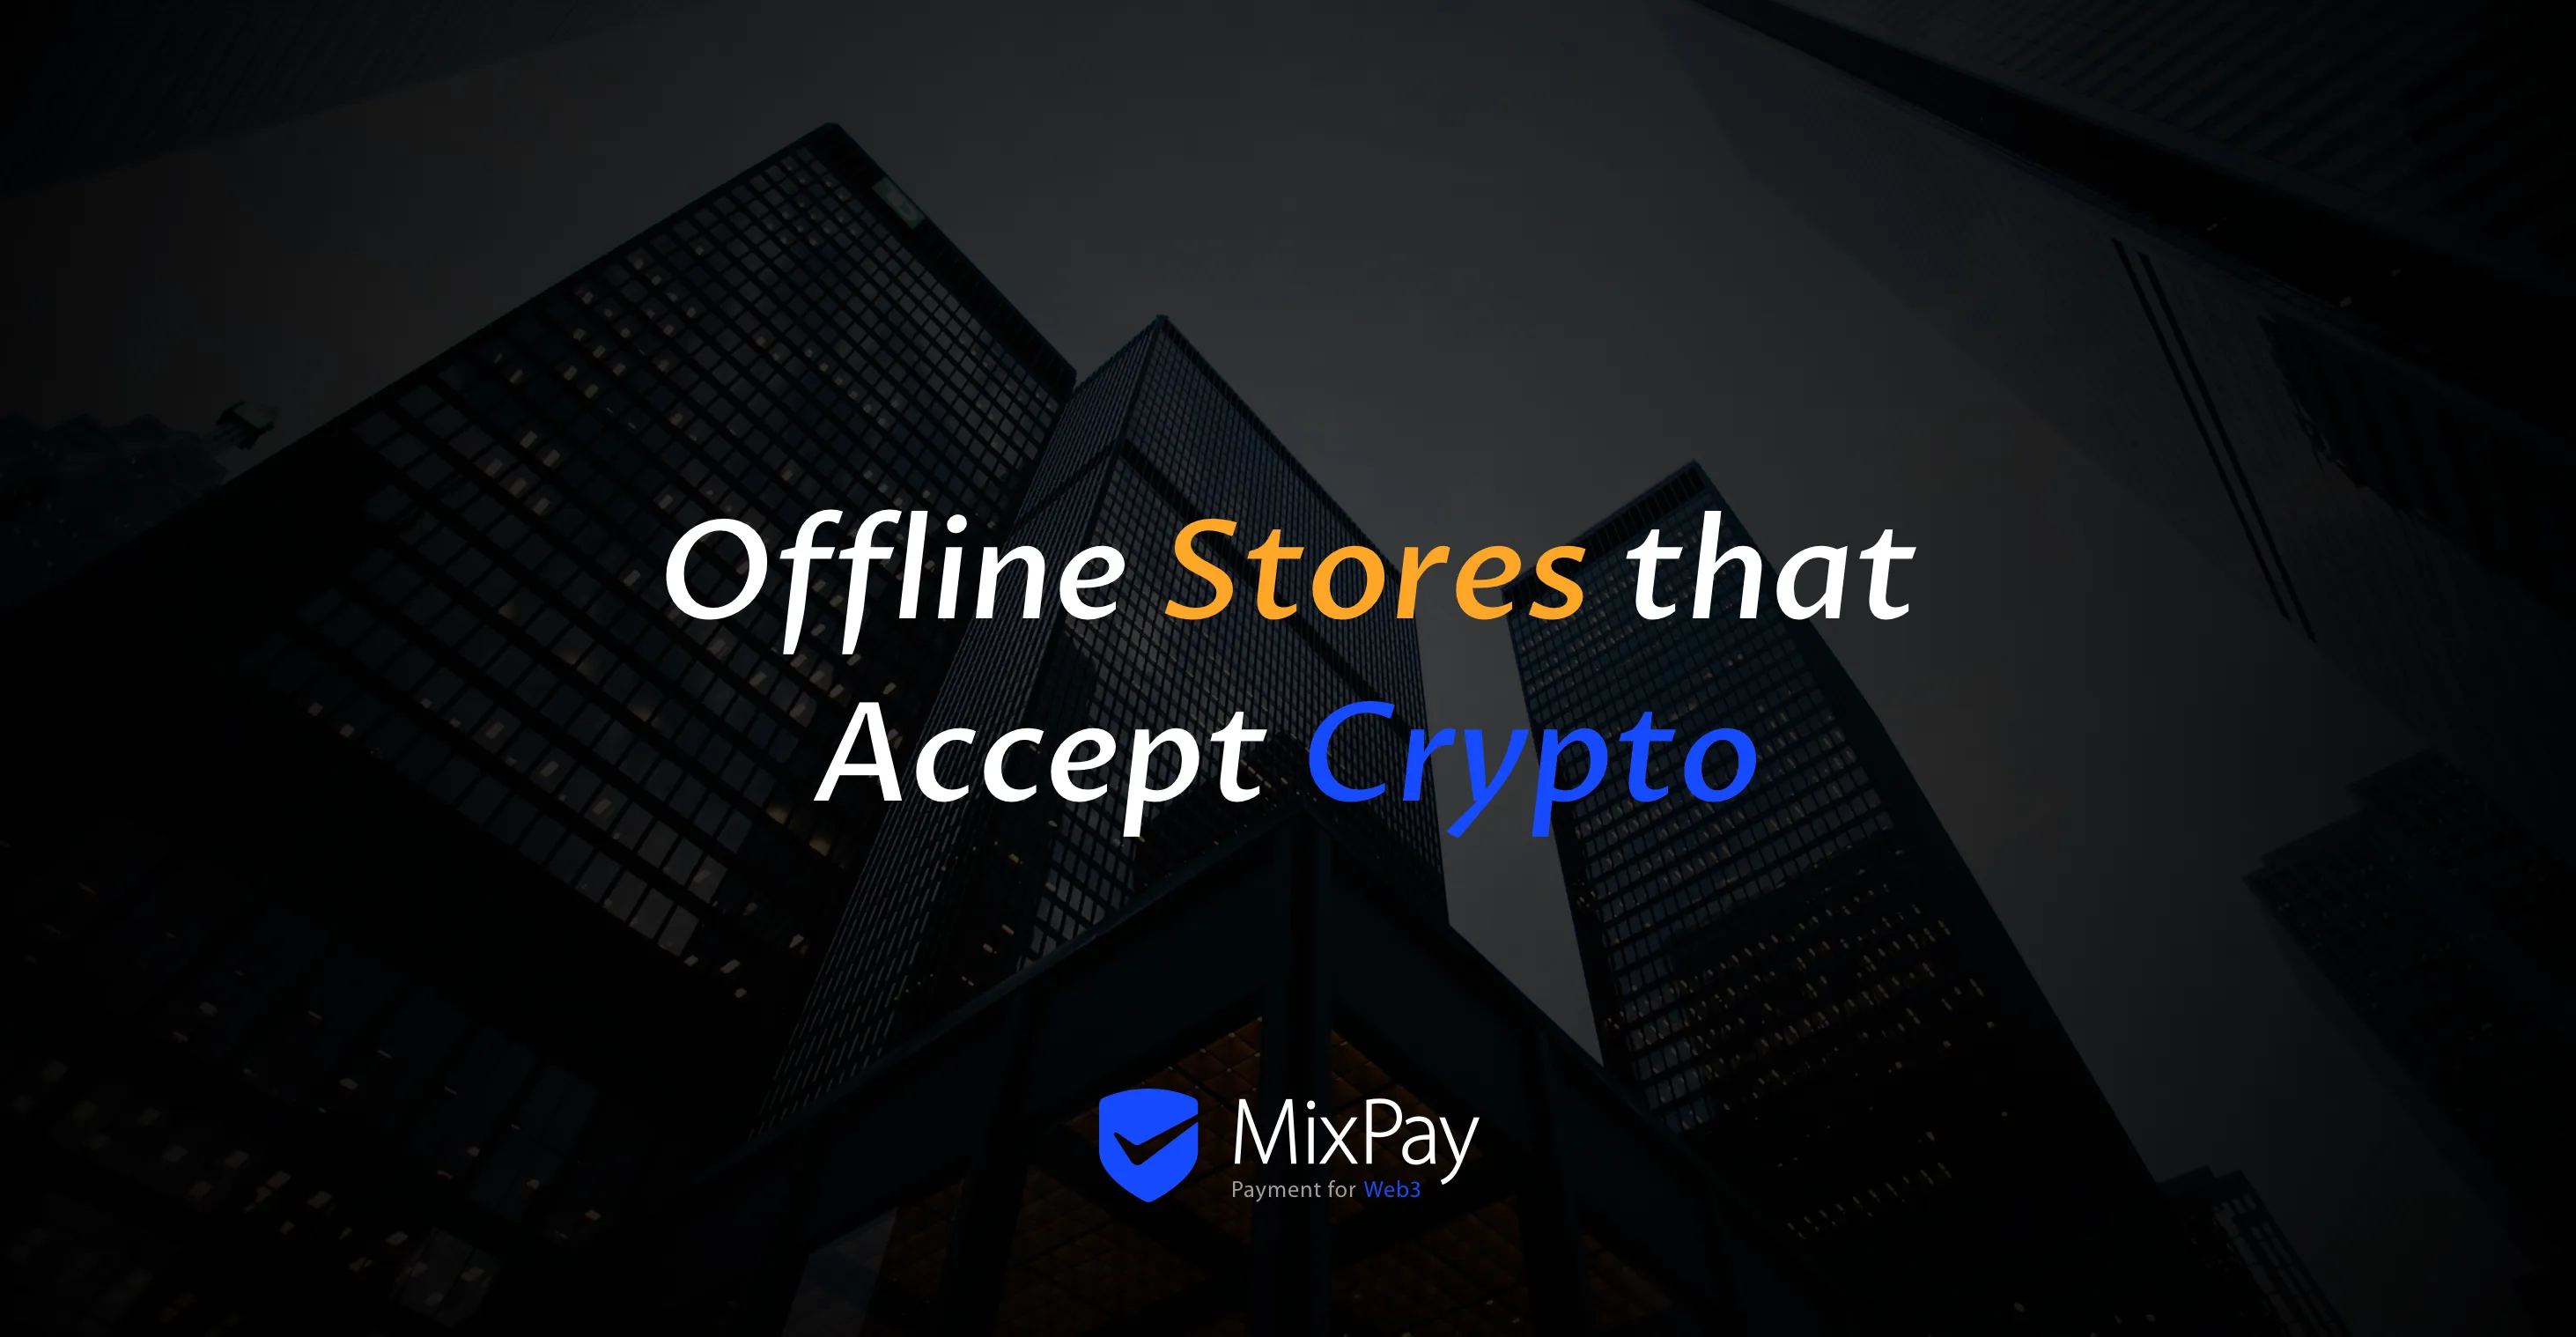 使用 MixPay 接受加密貨幣的線下商店